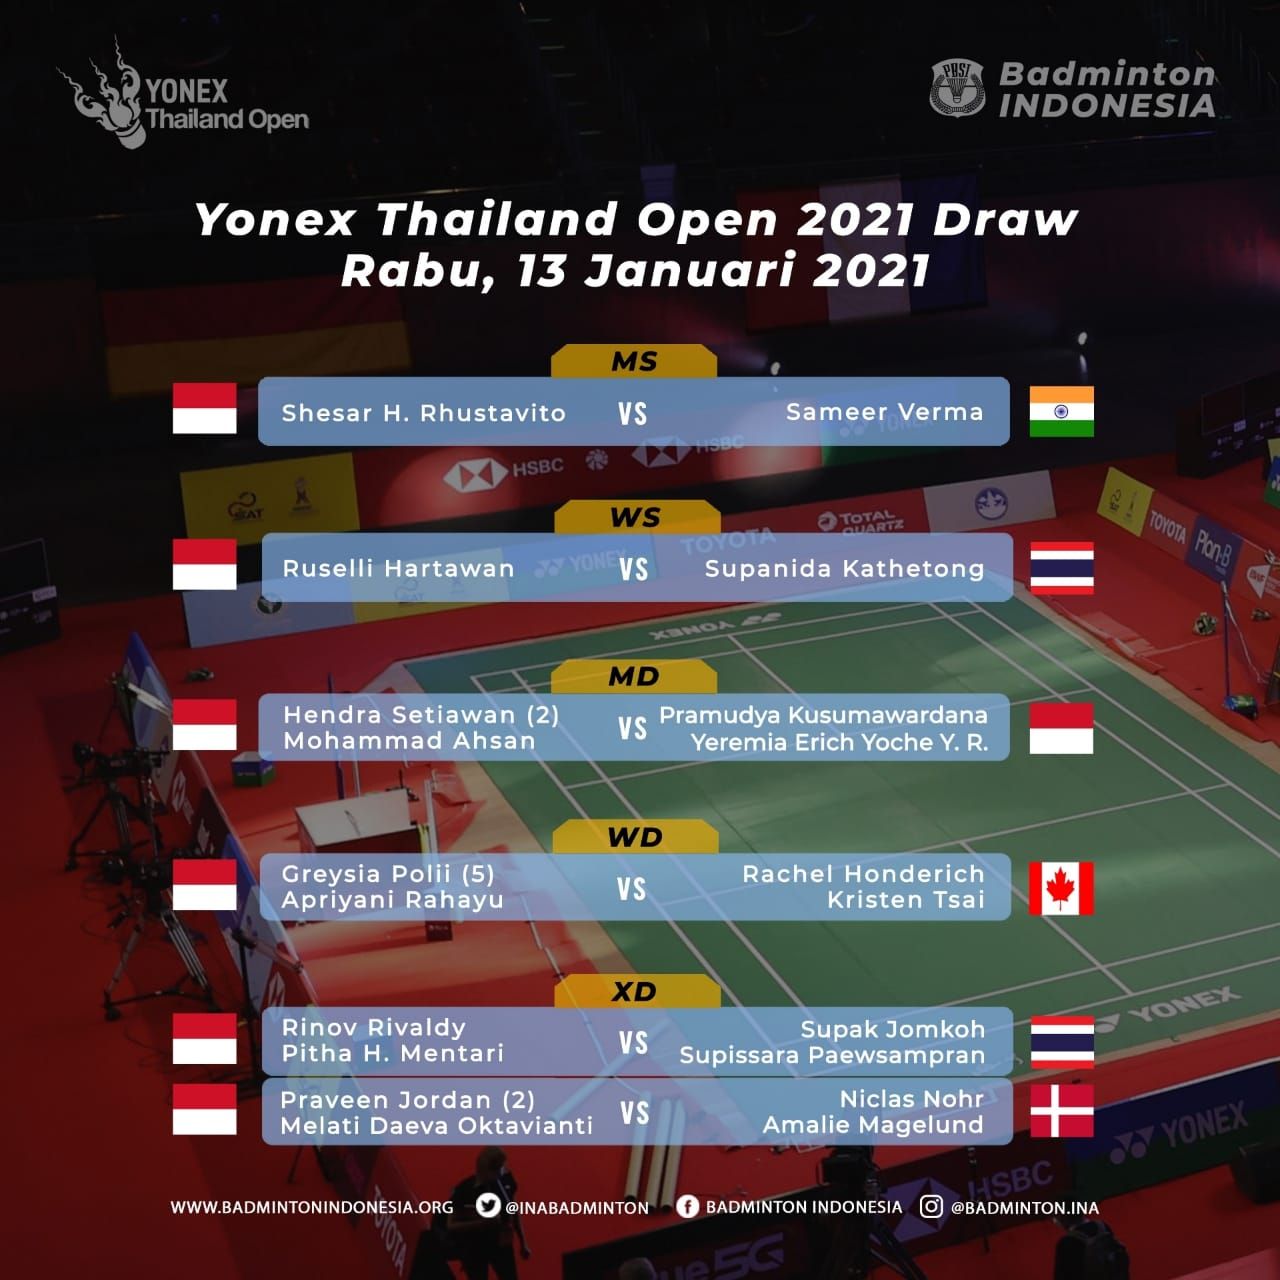 Tangkapan layar jadwal pertandingan Yonex Thailand Open, Rabu 13 Januari 2021